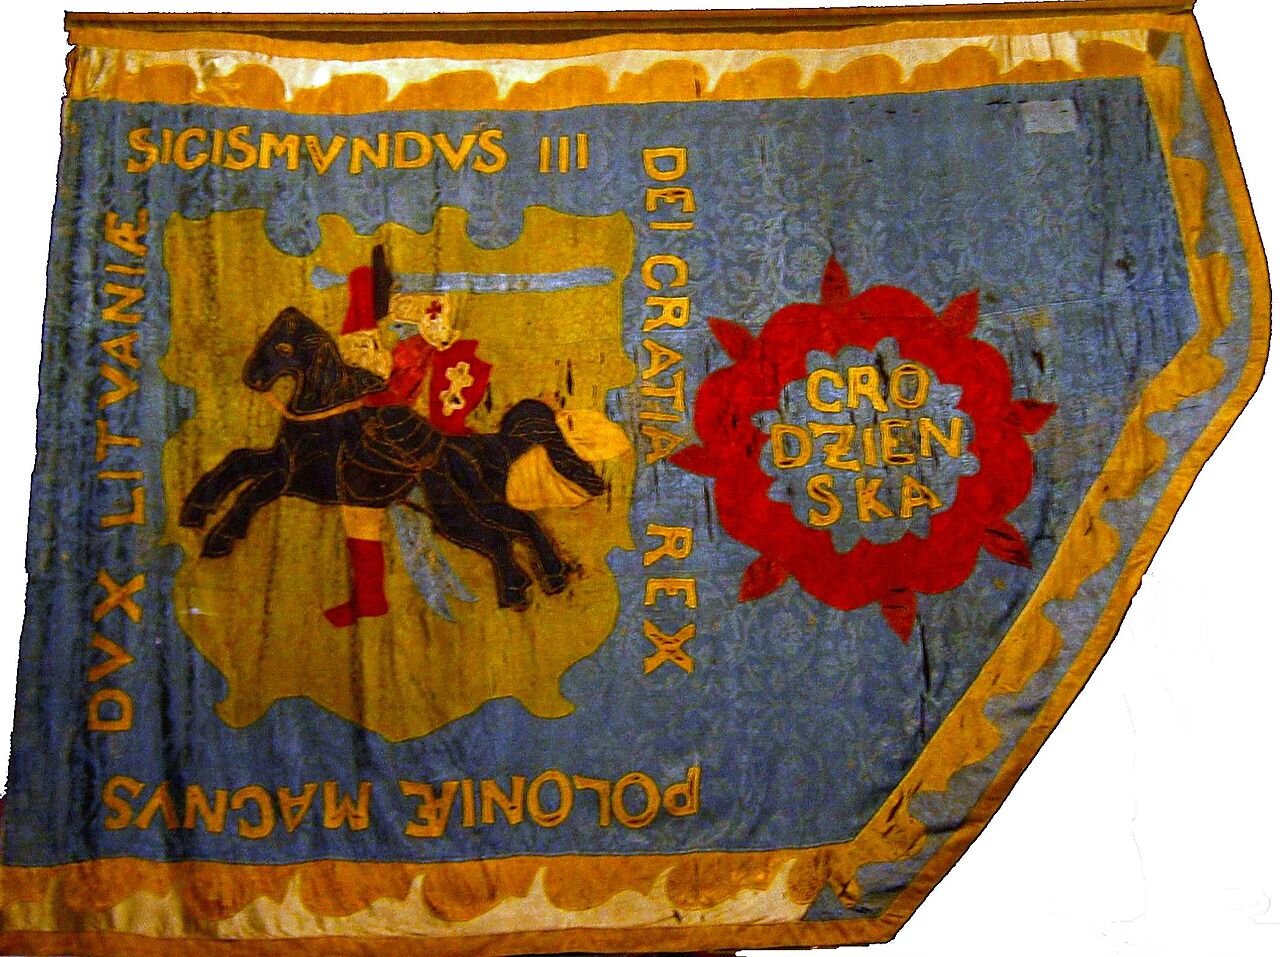 Zdjęcie ukazuje fragment chorągwi pospolitego ruszenia powiatu grodzieńskiego z 1619 roku. Na chorągwi jest mężczyzna z mieczem siedzący na koniu. Wokół niego znajduje się napis po łacinie. 